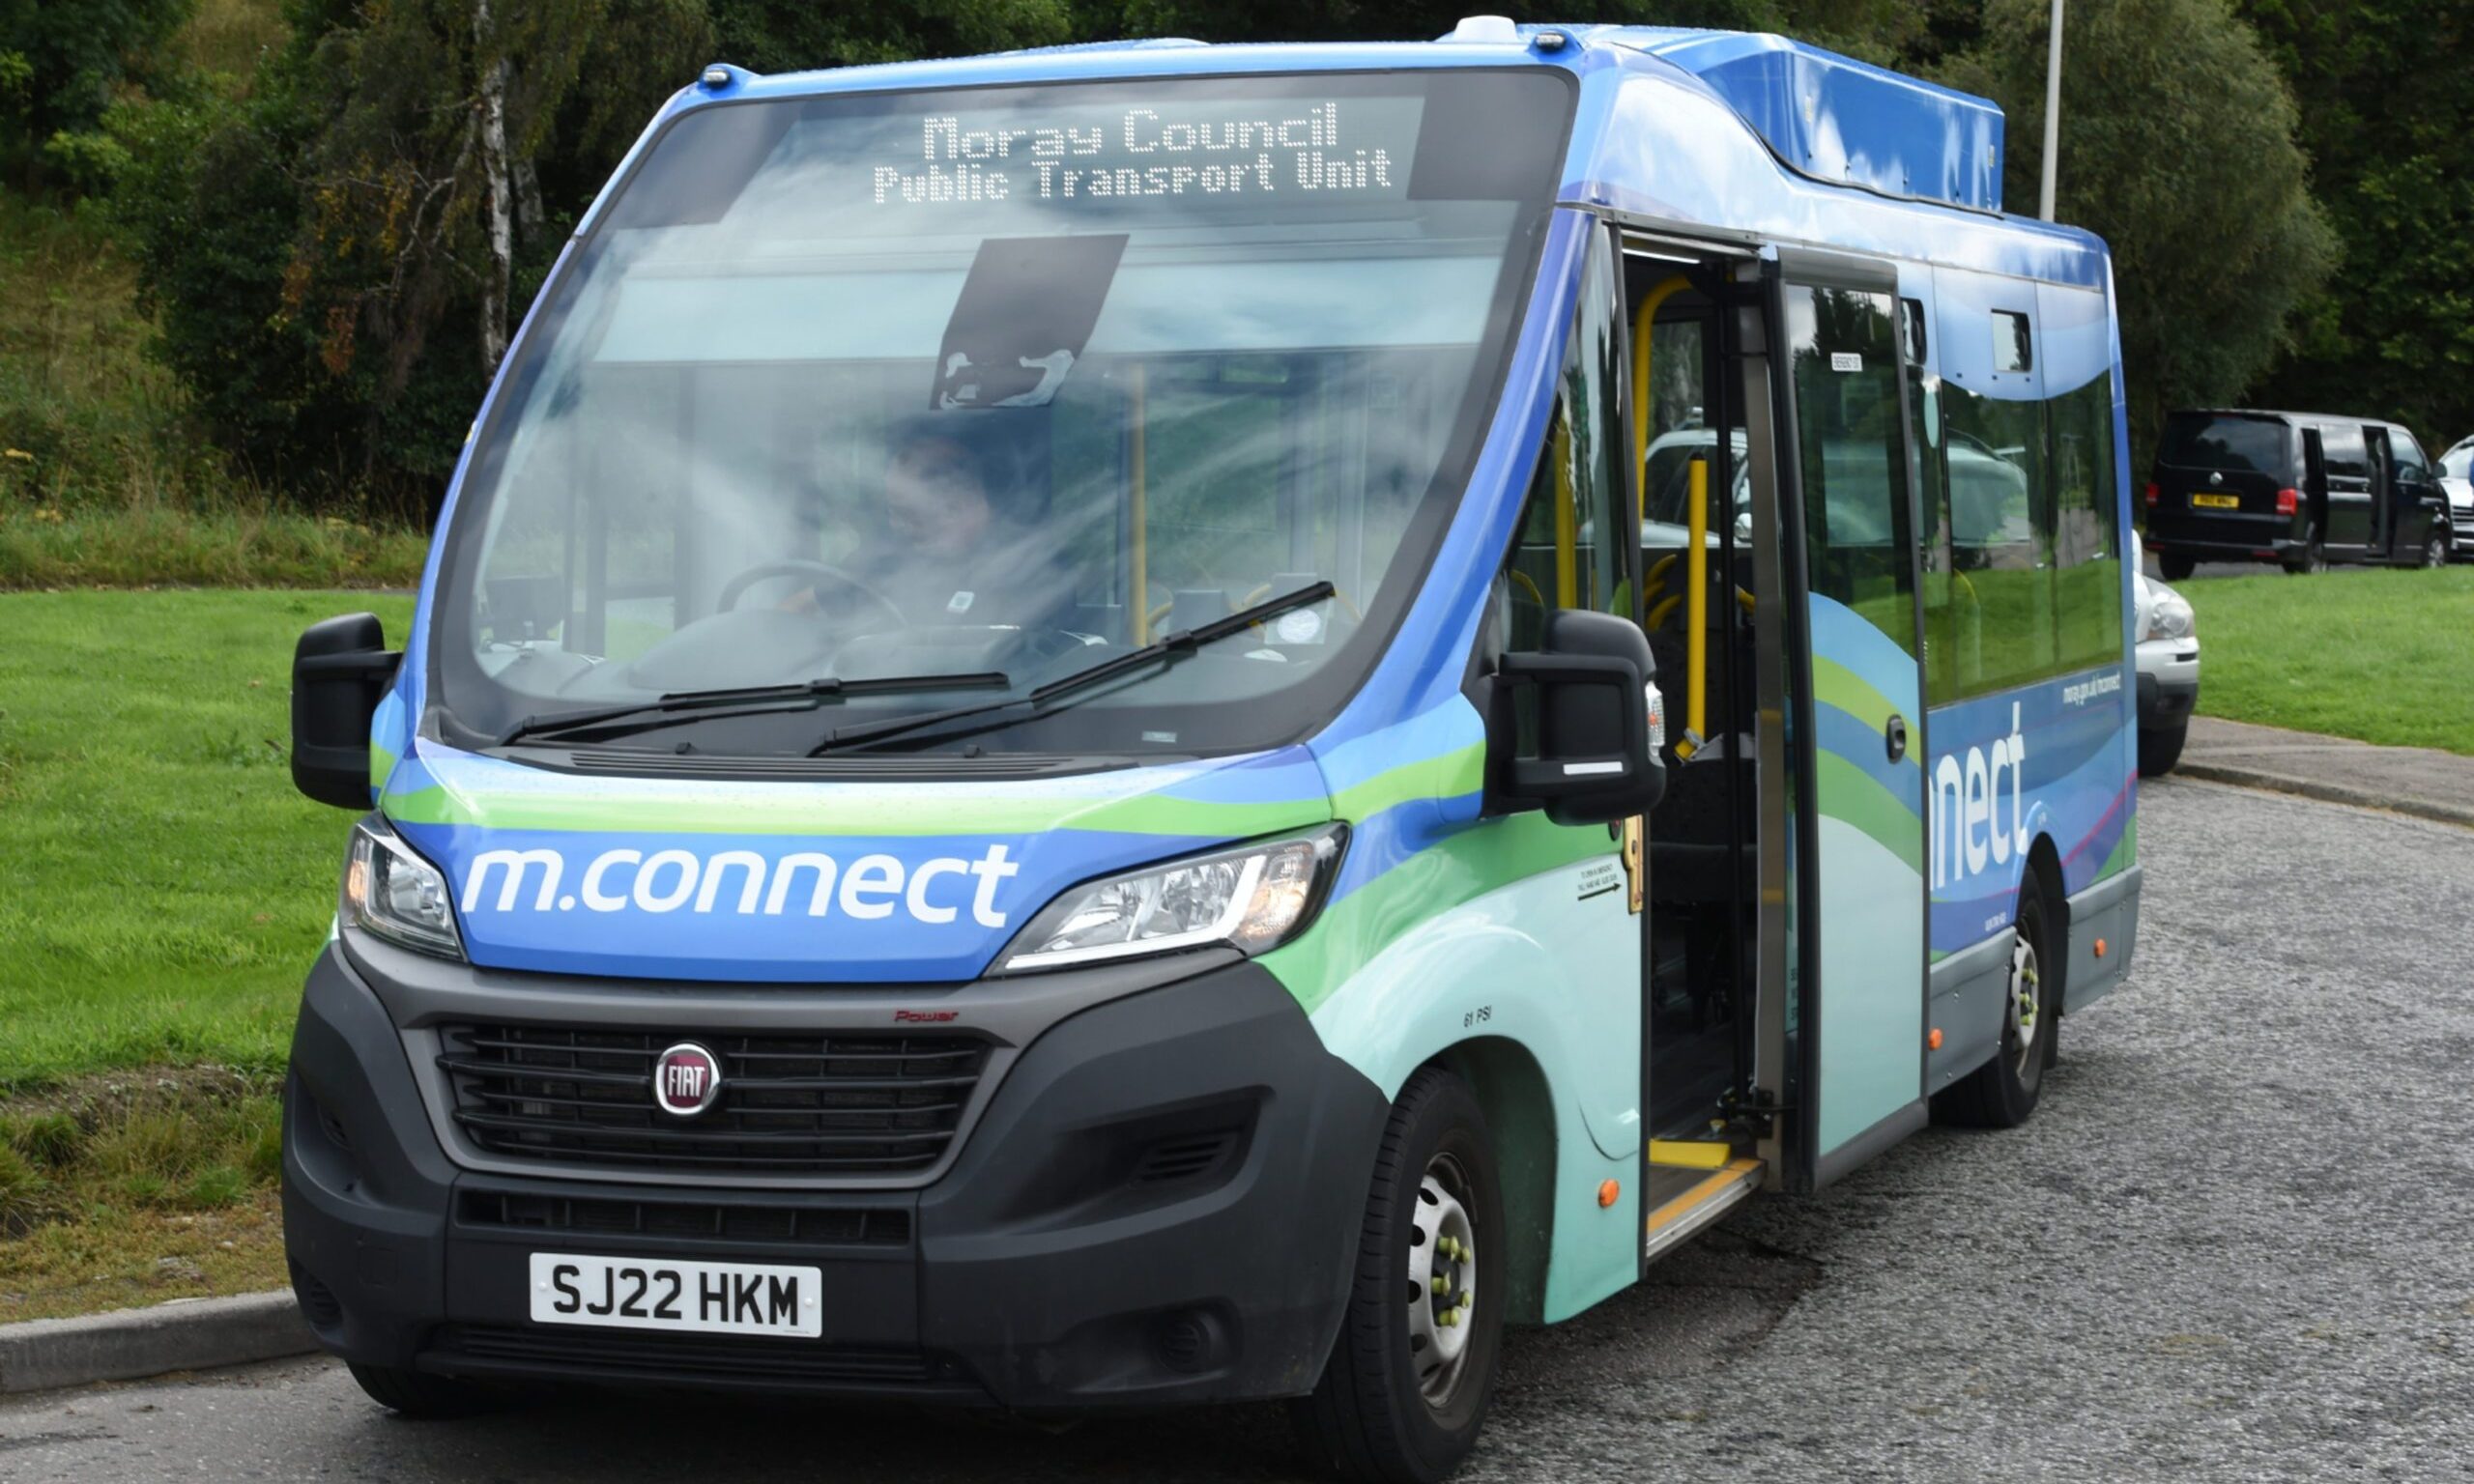 Moray Council m.connect bus. 